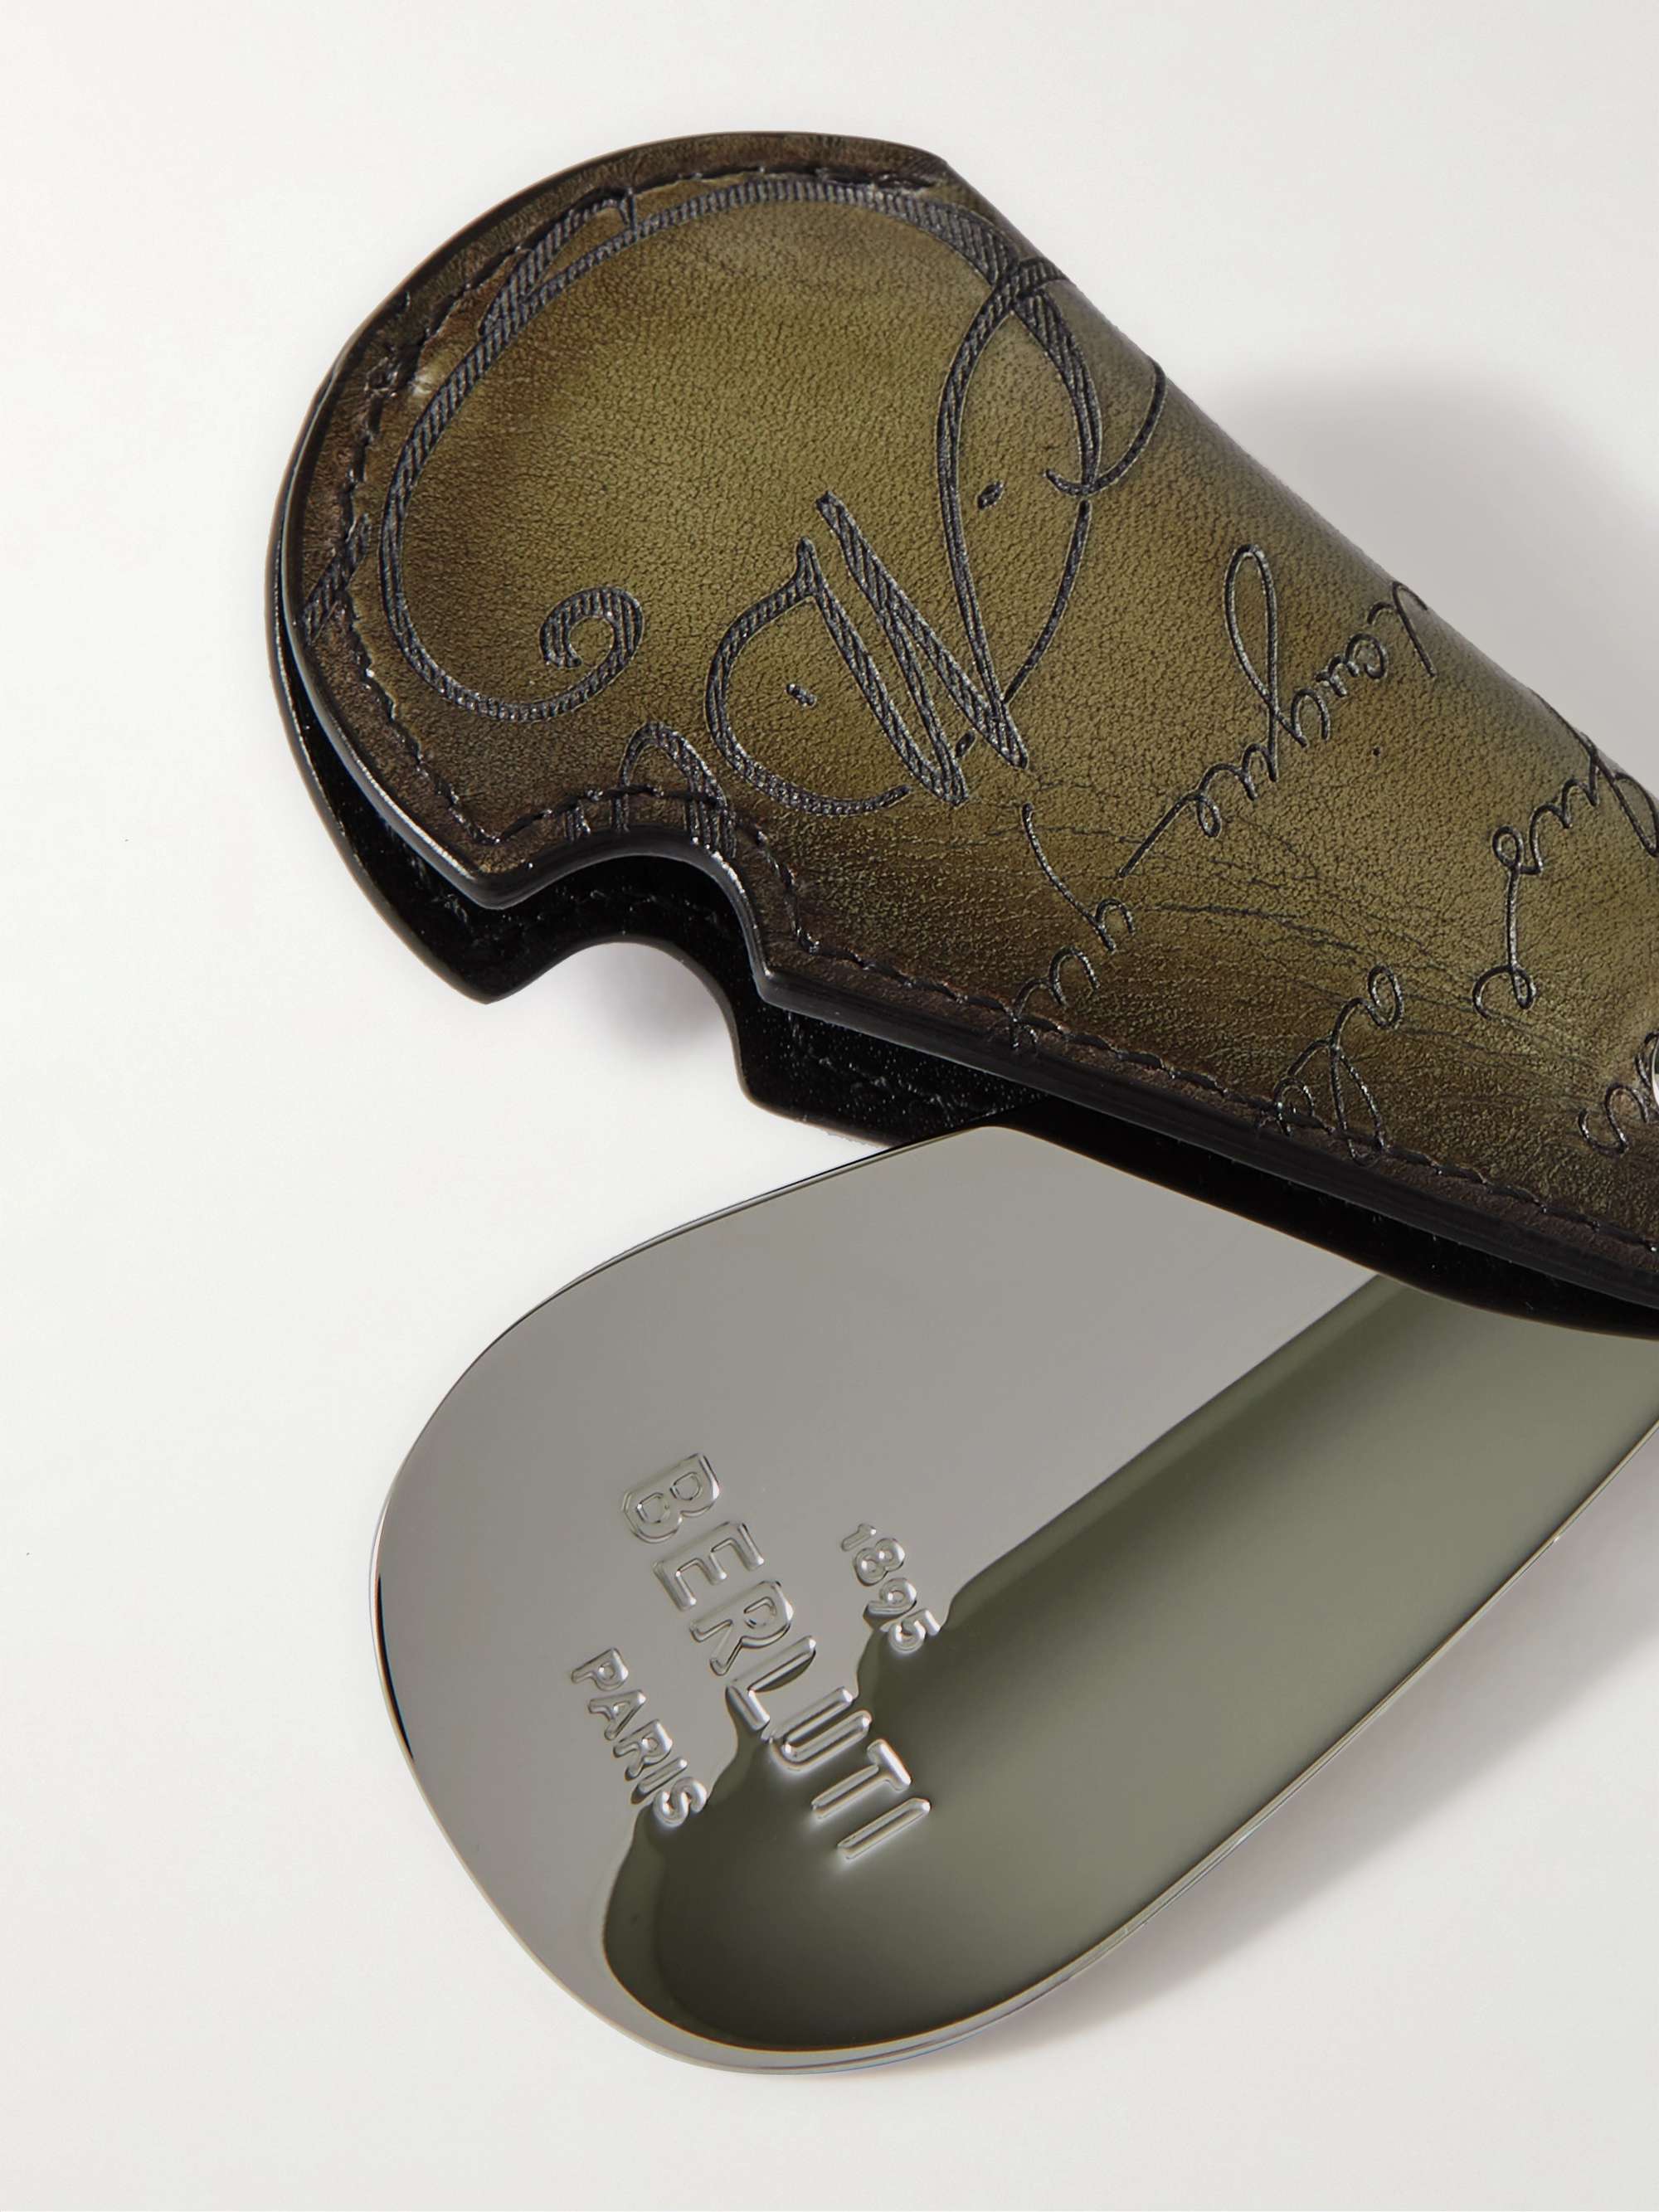 BERLUTI Scritto Venezia Leather and Silver-Tone Shoe Horn Key Fob